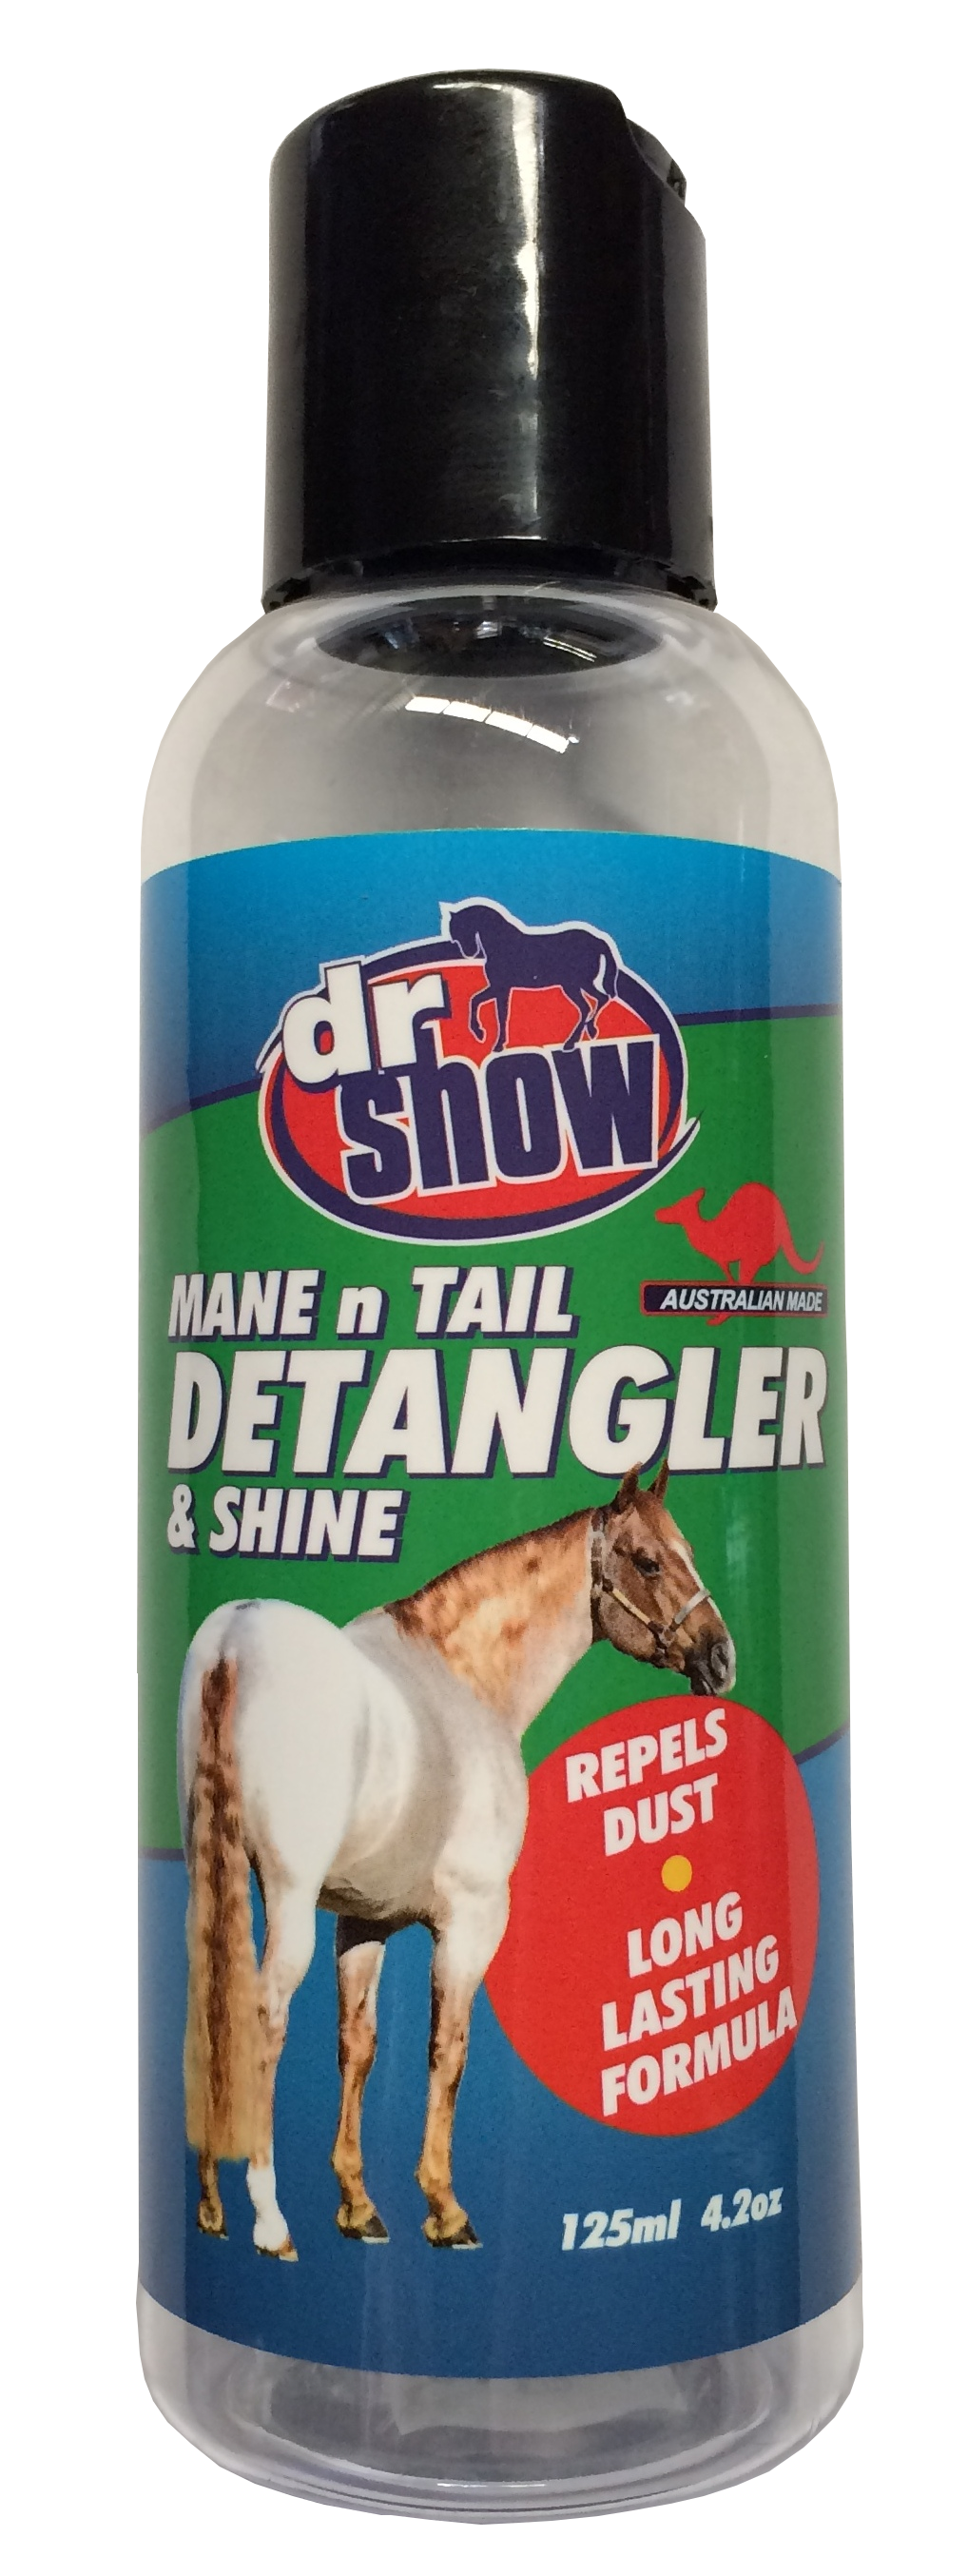 Dr Show Mane Detangler and Shine